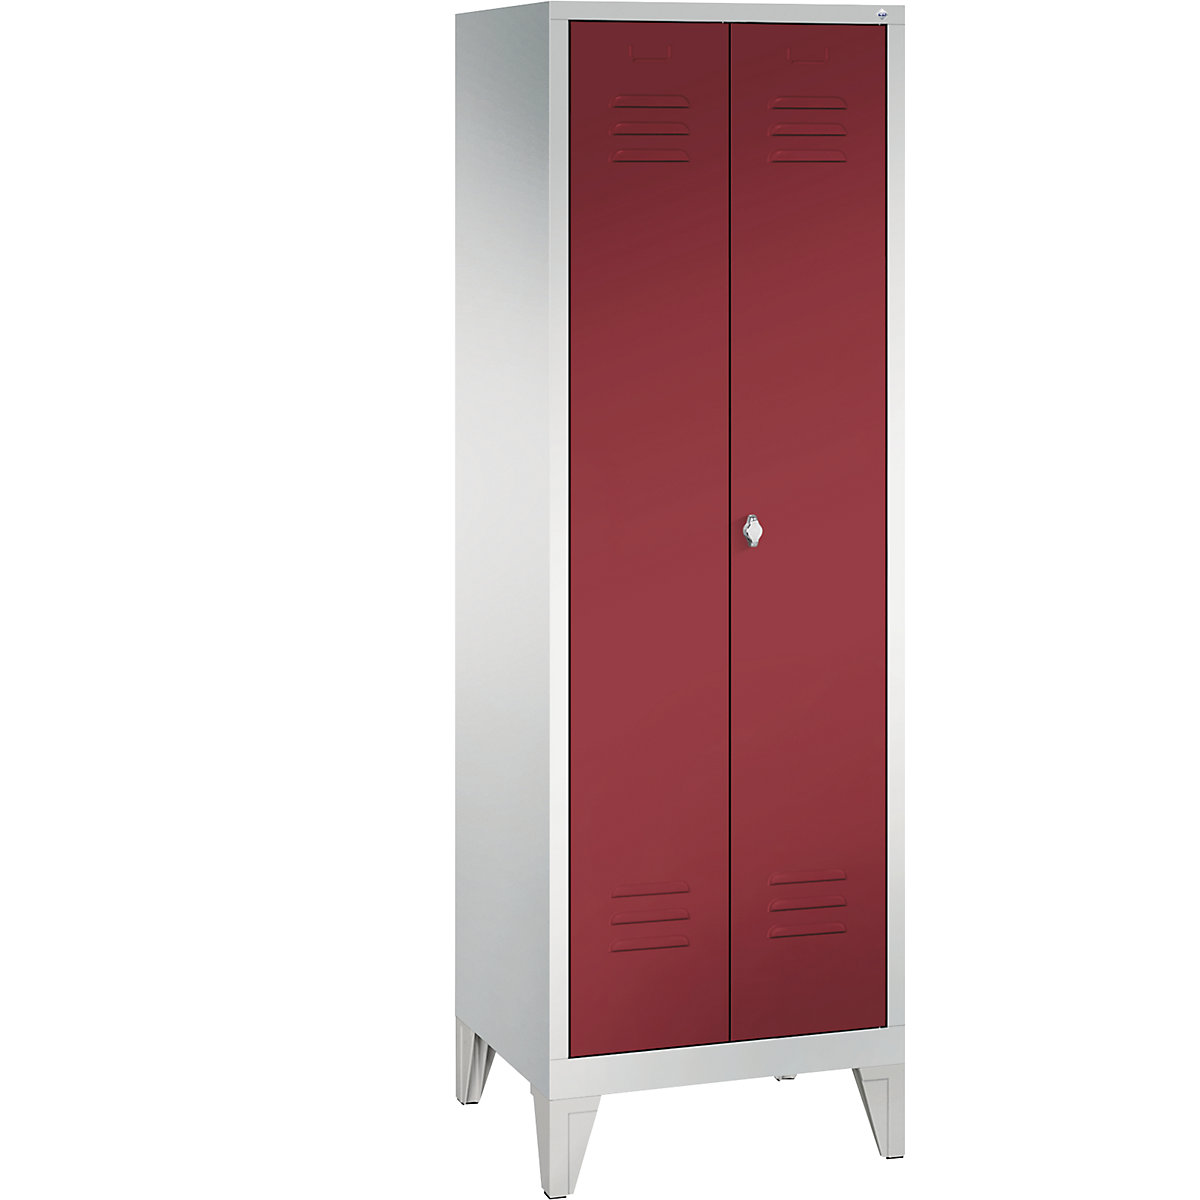 Garderobna omara CLASSIC z nogami in dvokrilnimi vrati na stik – C+P, 2 predelka, širina 300 mm/predelek, svetlo sive / rubinasto rdeče barve-7